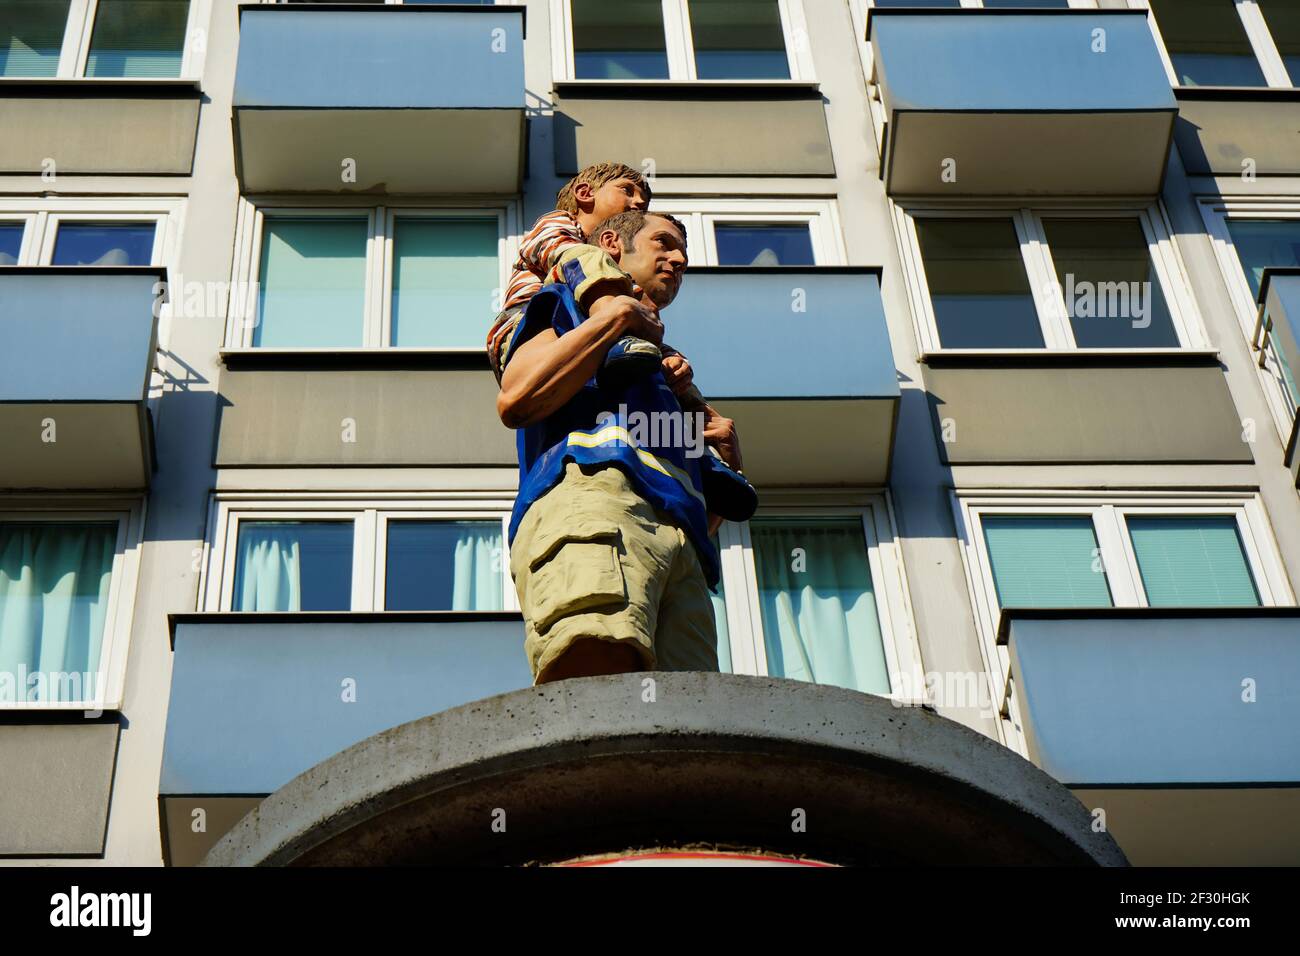 Säulenheilige von Christoph Pöggeler: Lebensechte Skulpturen von alltäglichen Menschen, die auf Werbesäulen stehen. Dieser wird 'Vater und Sohn' genannt. Stockfoto